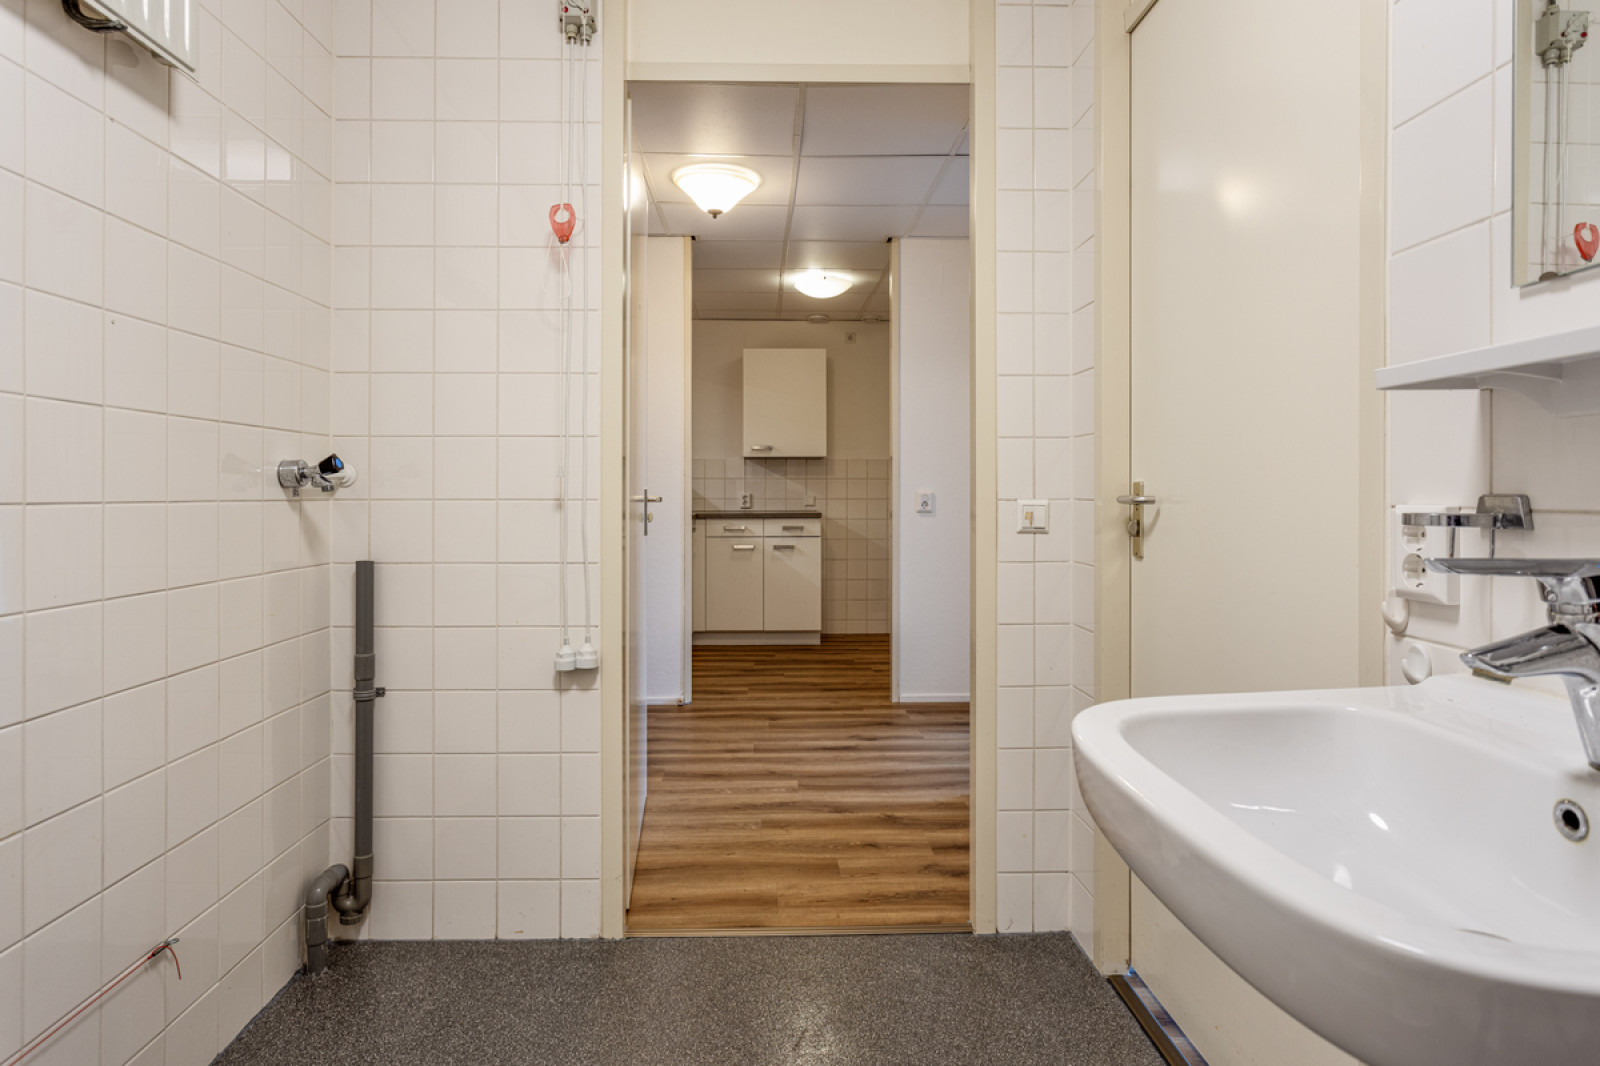 Appartement in Hilversum